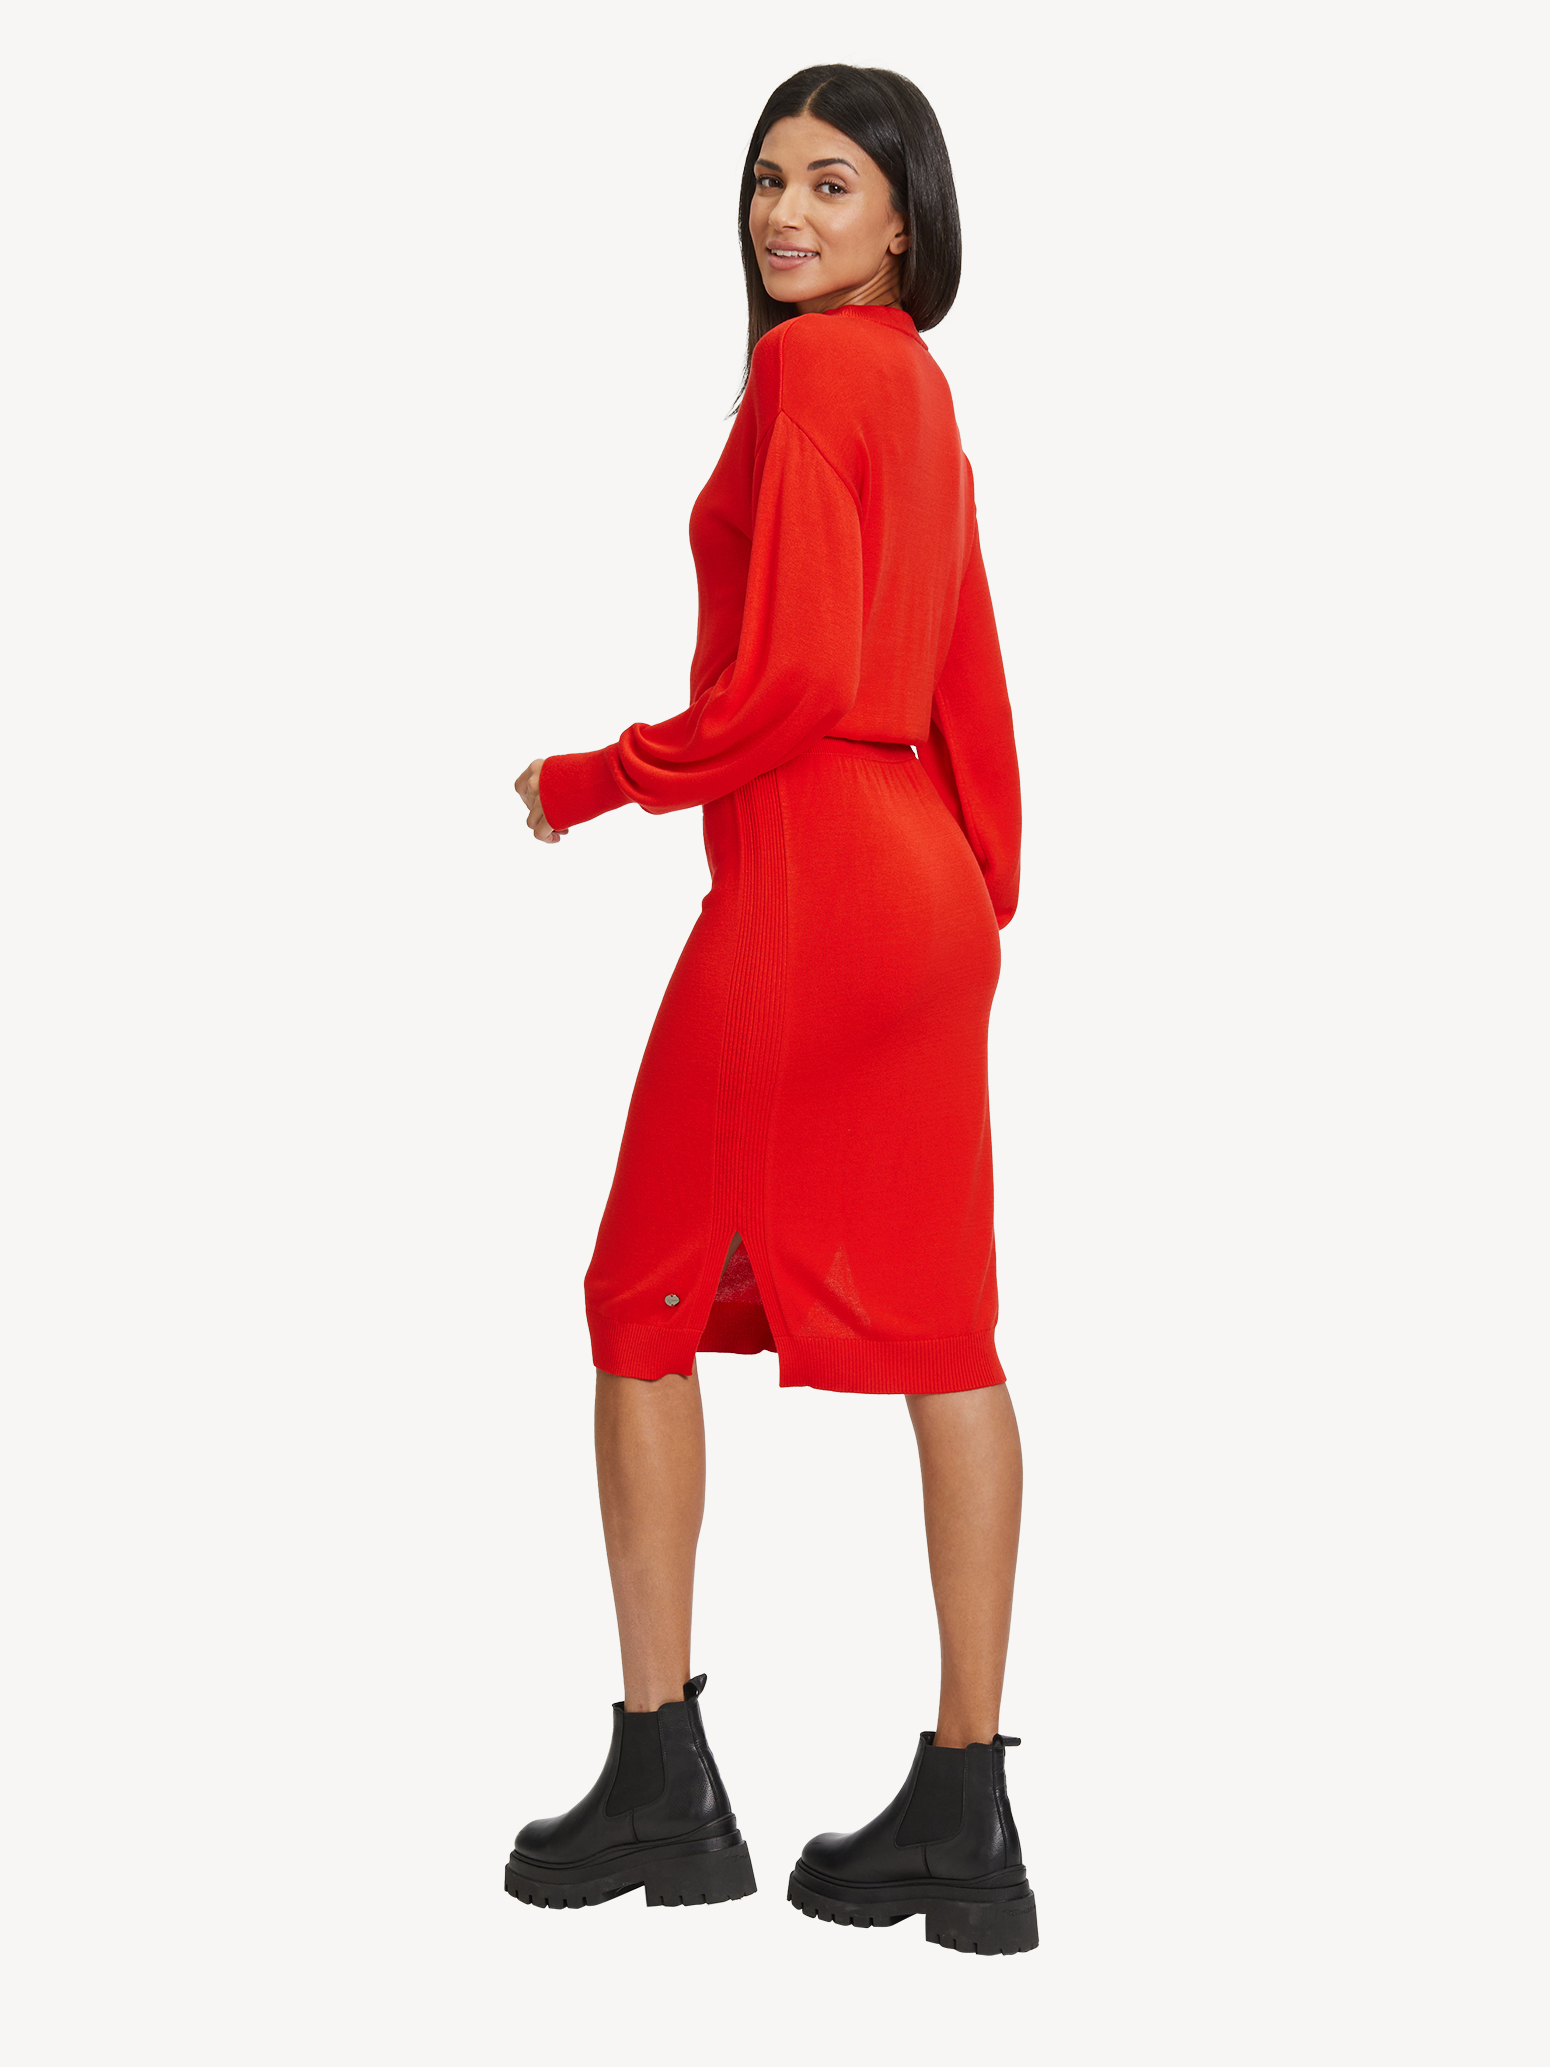 Kleid - rot TAW0329-30042: Tamaris Kleider & Röcke online kaufen!